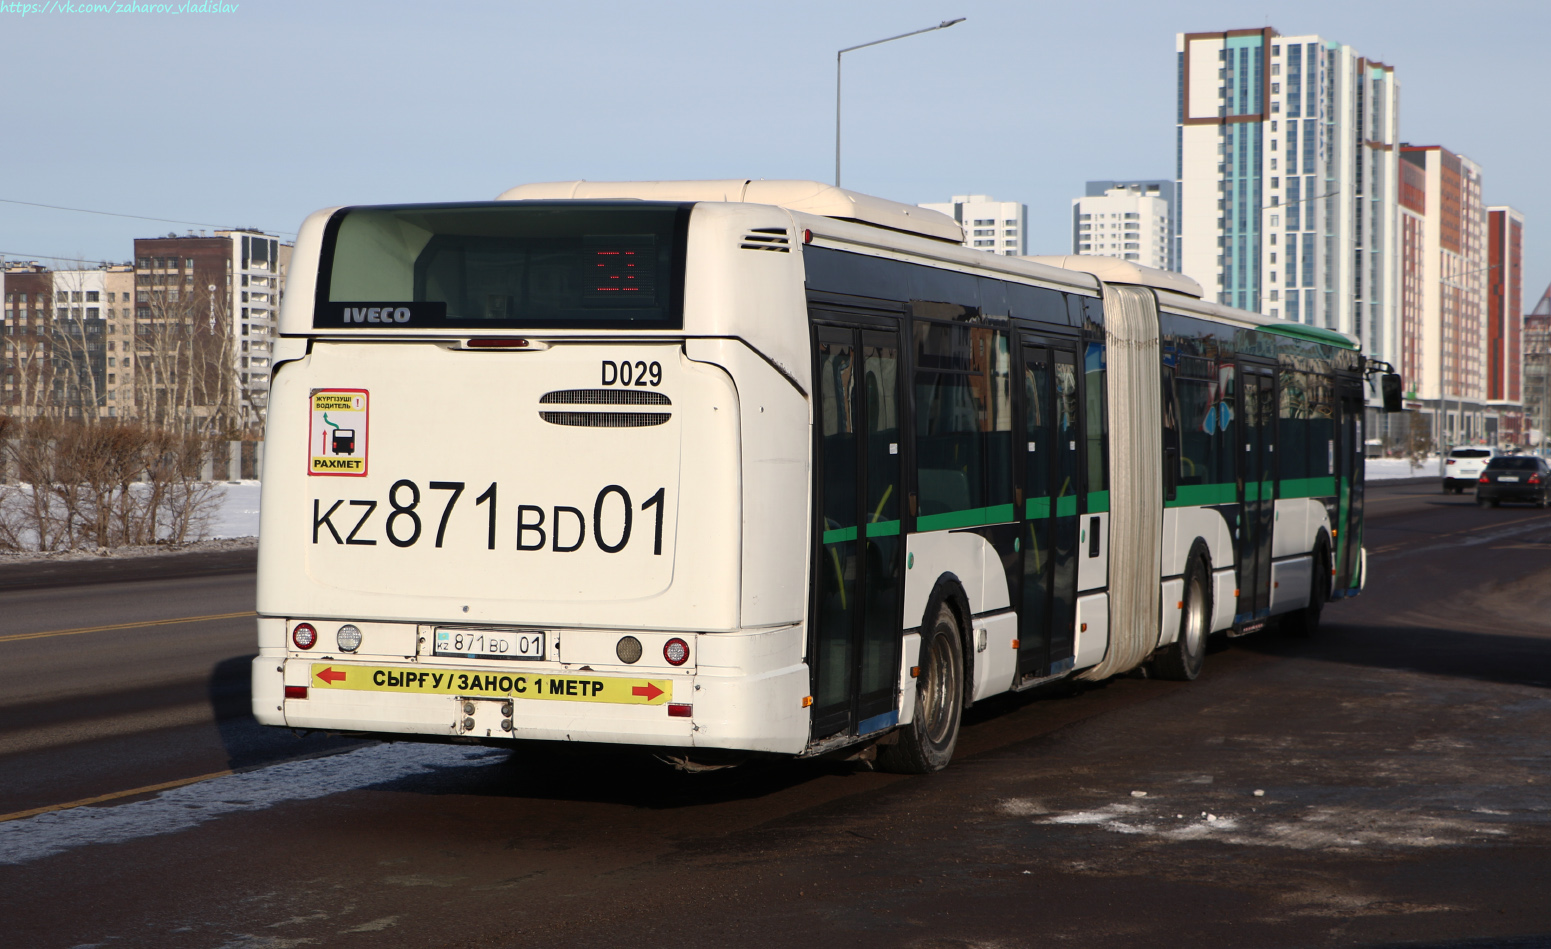 Αστάνα, Irisbus Citelis 18M # D029